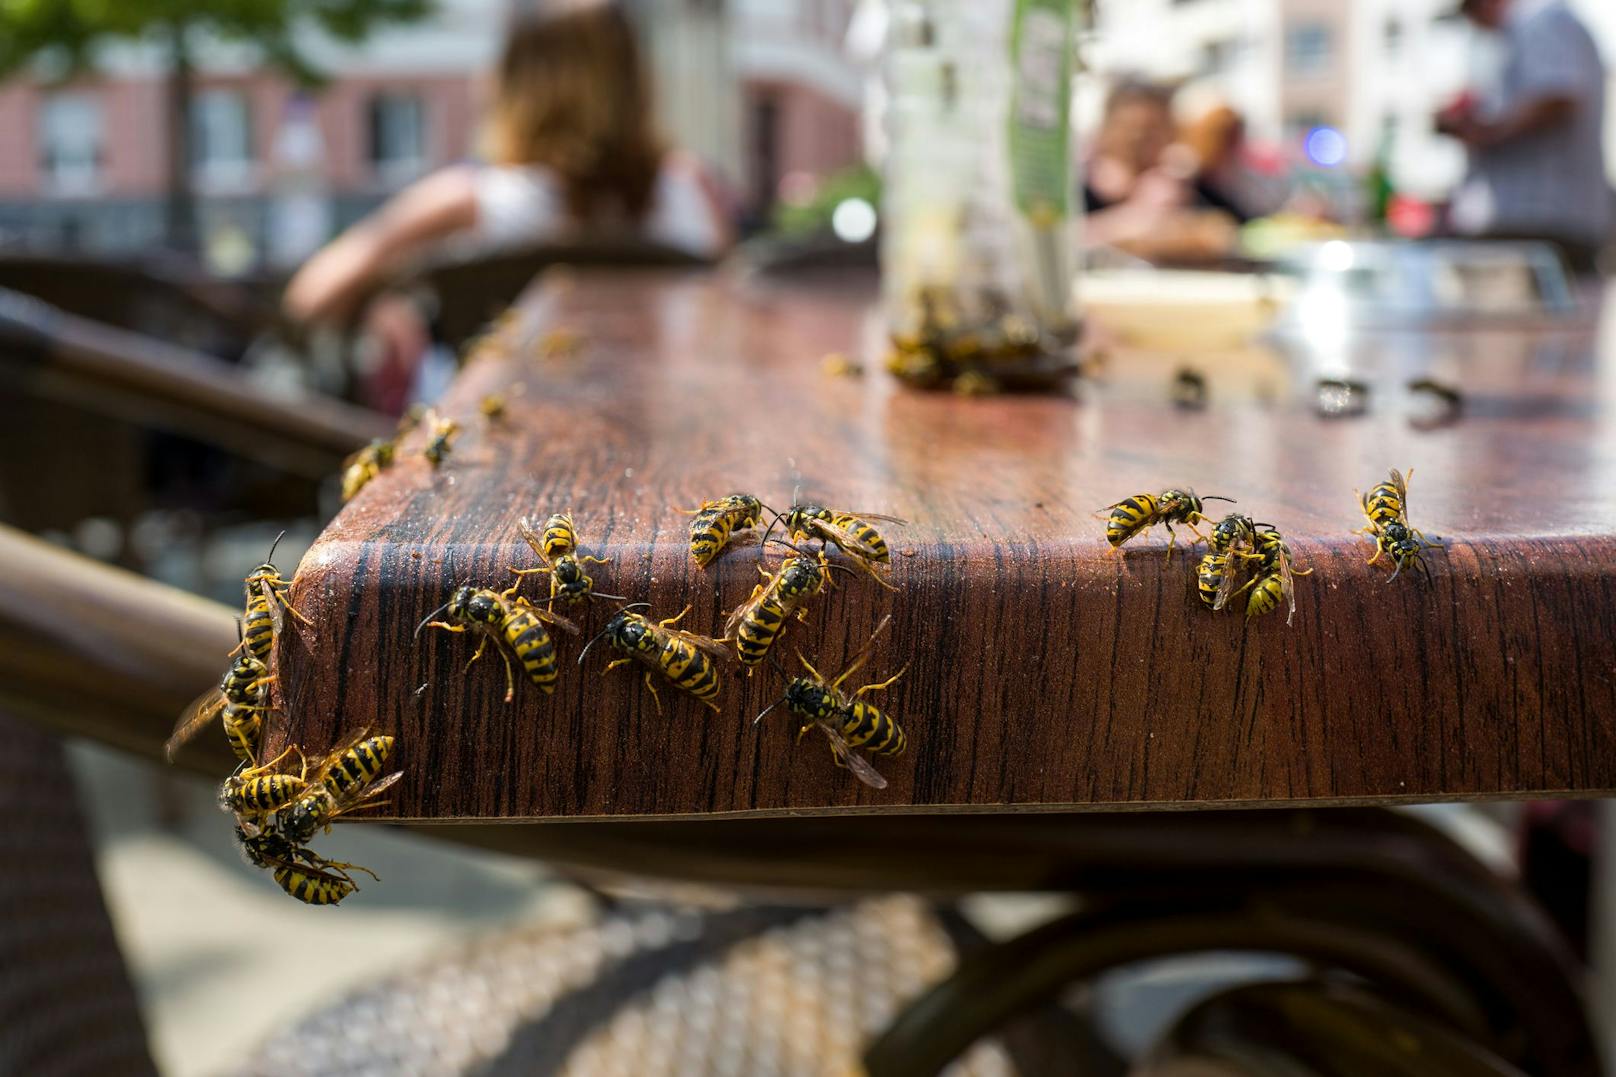 Was hilft jetzt wirklich gegen Wespen?